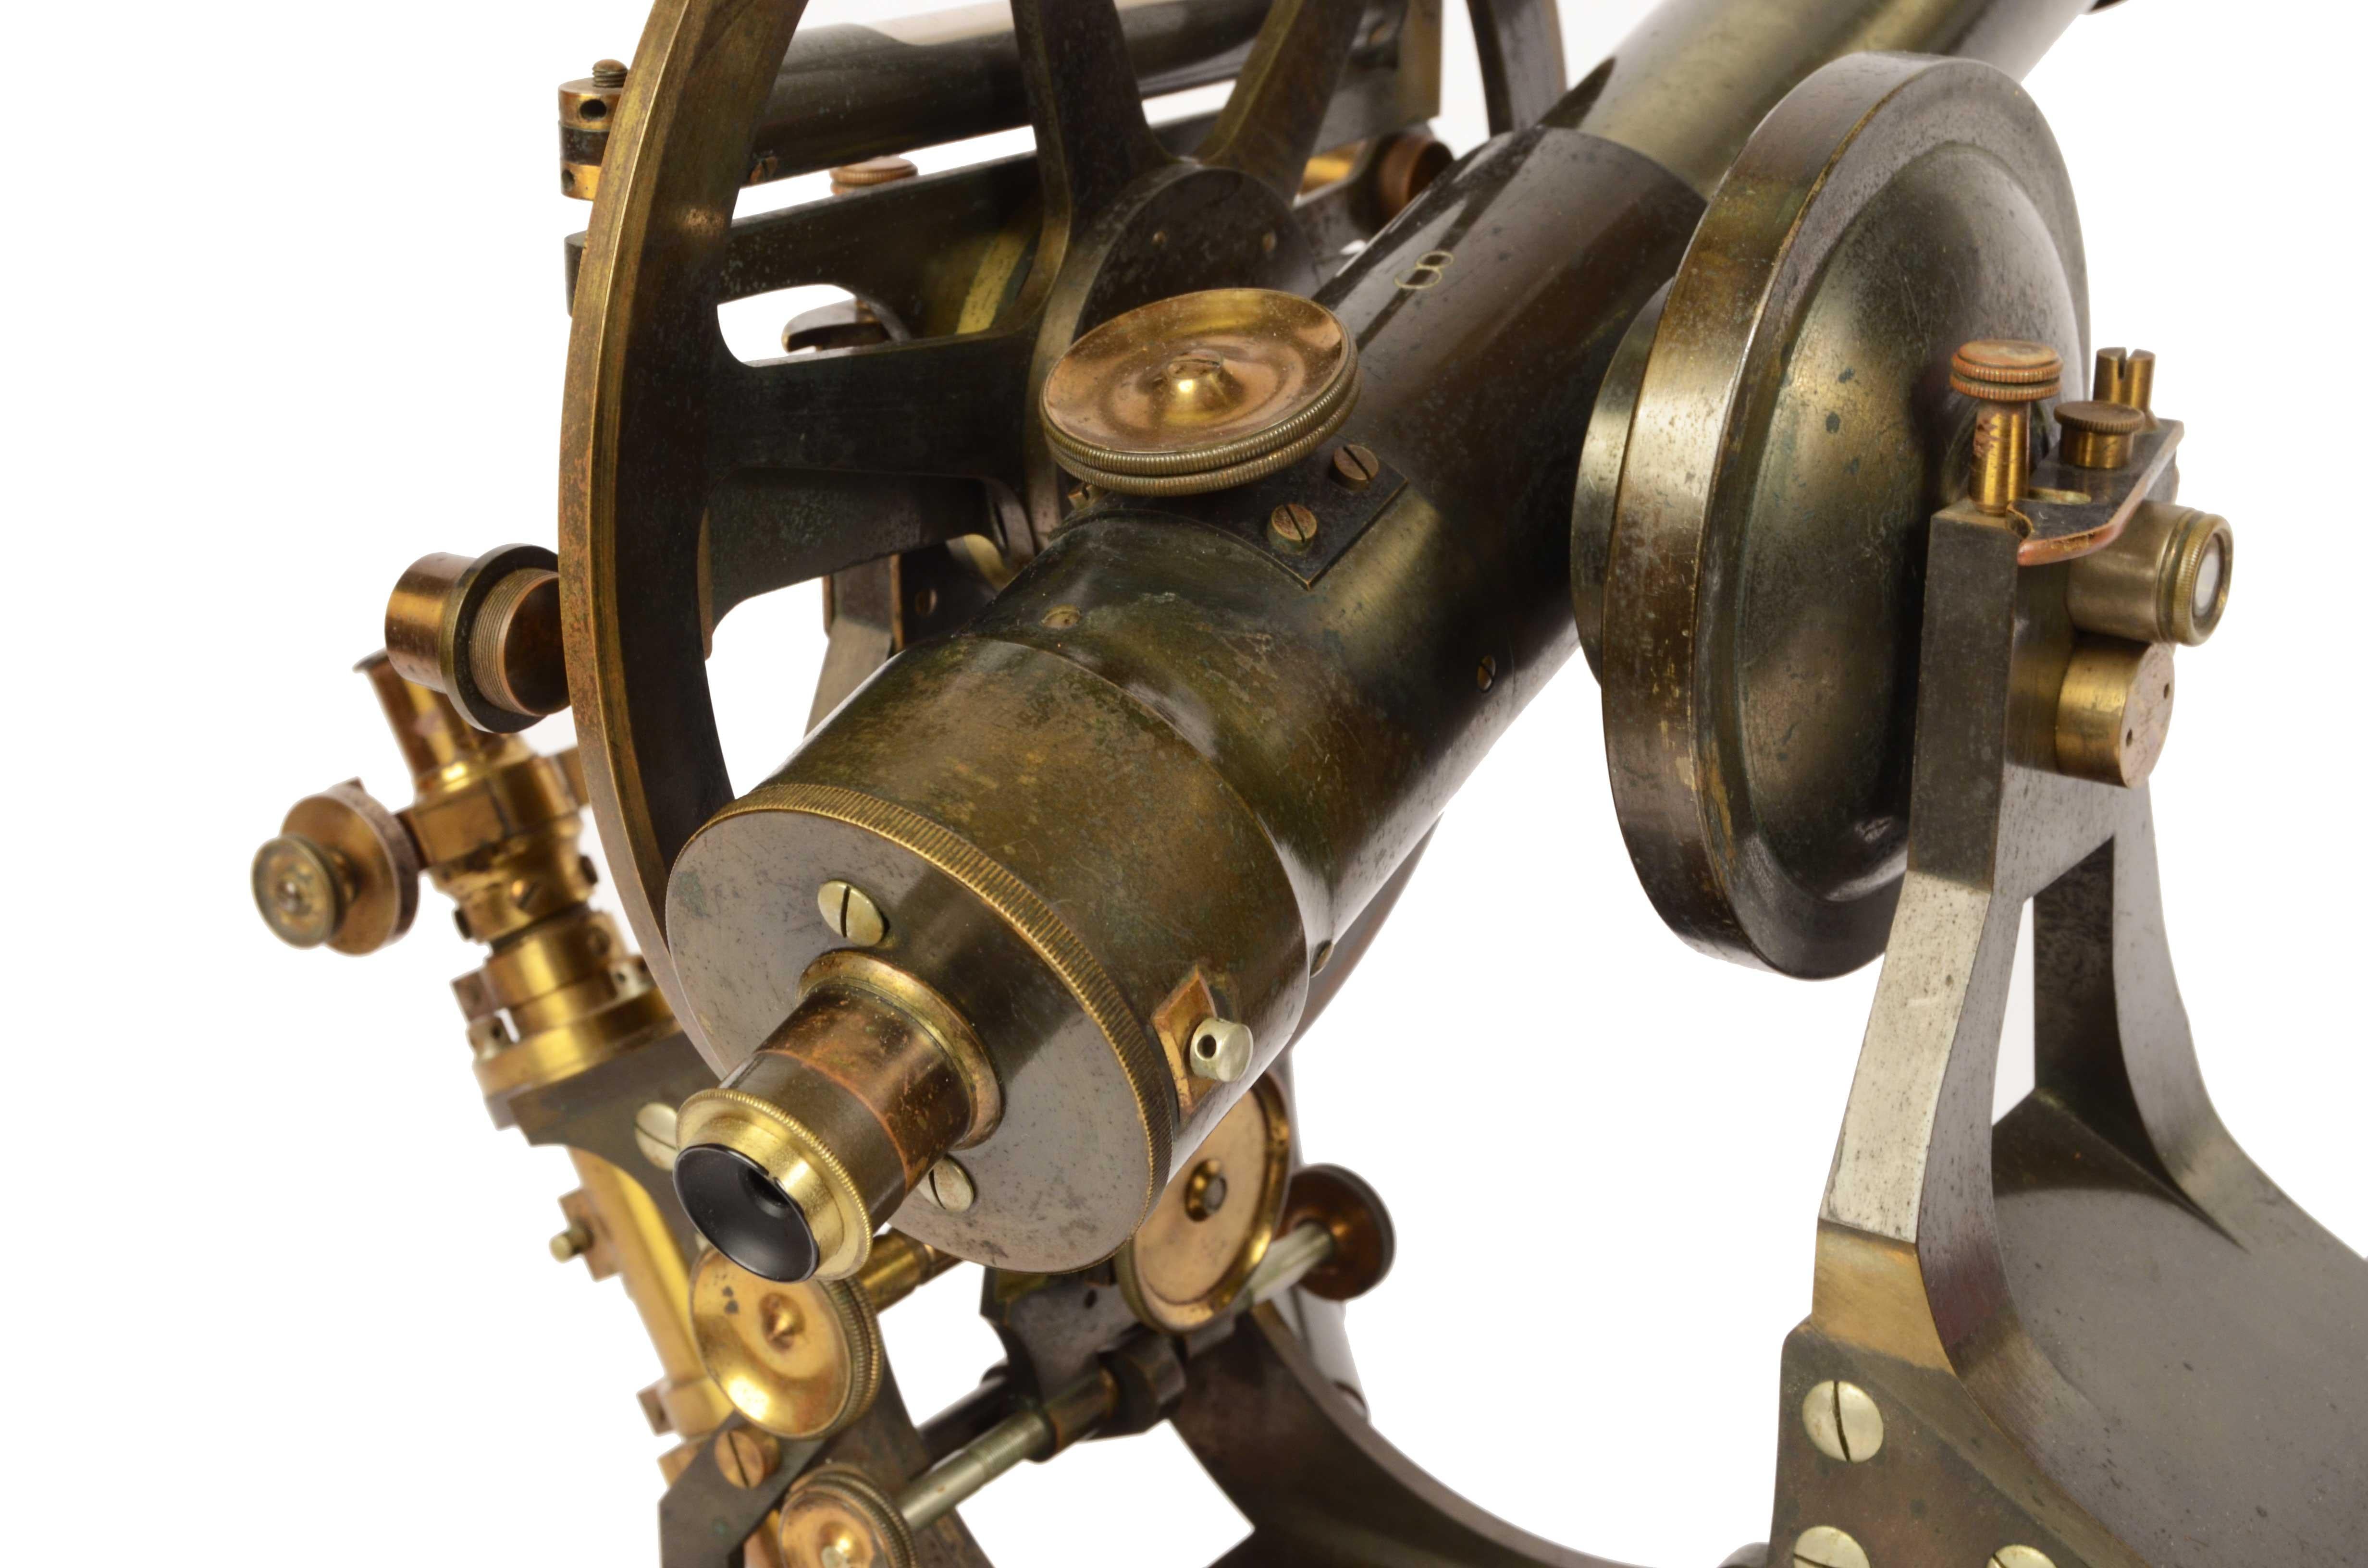 1870s Theodolite Troughton & Simms Antique Scientific Instrument of Measurement 2